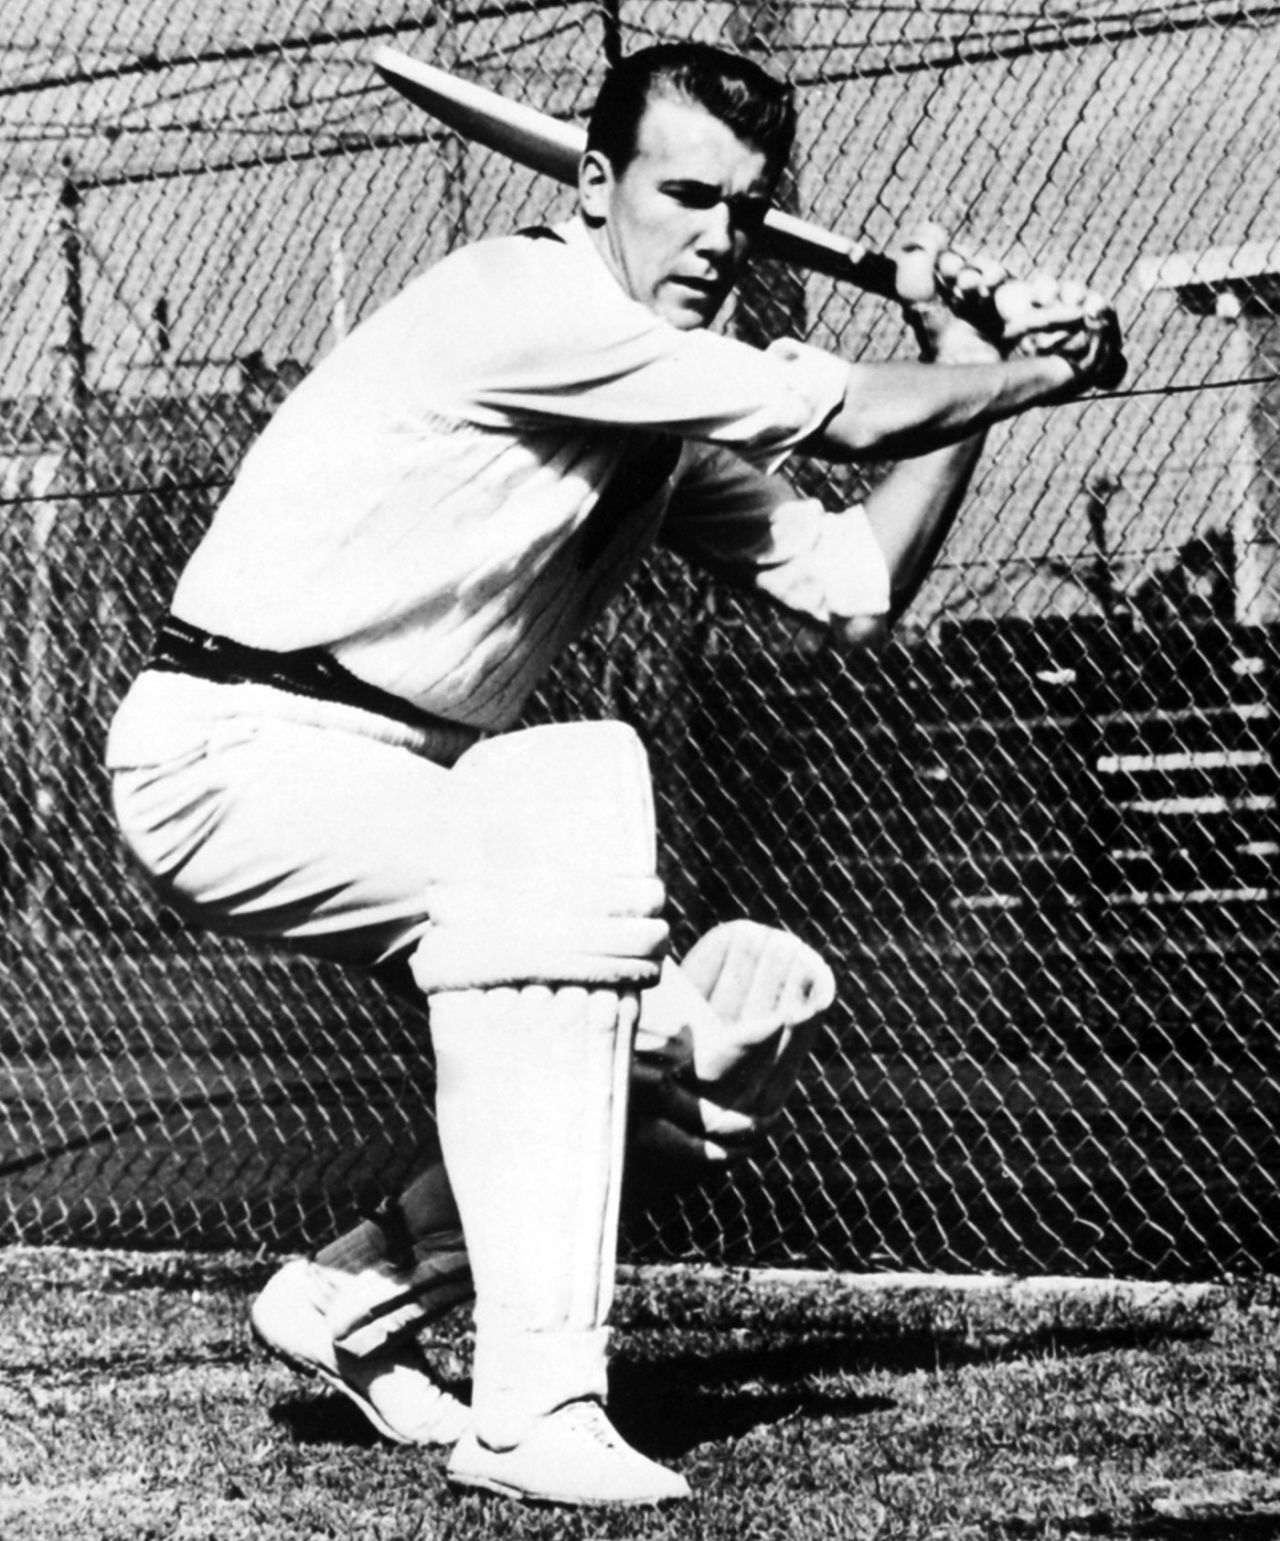 Les Joslin bats in the nets, April 11, 1968